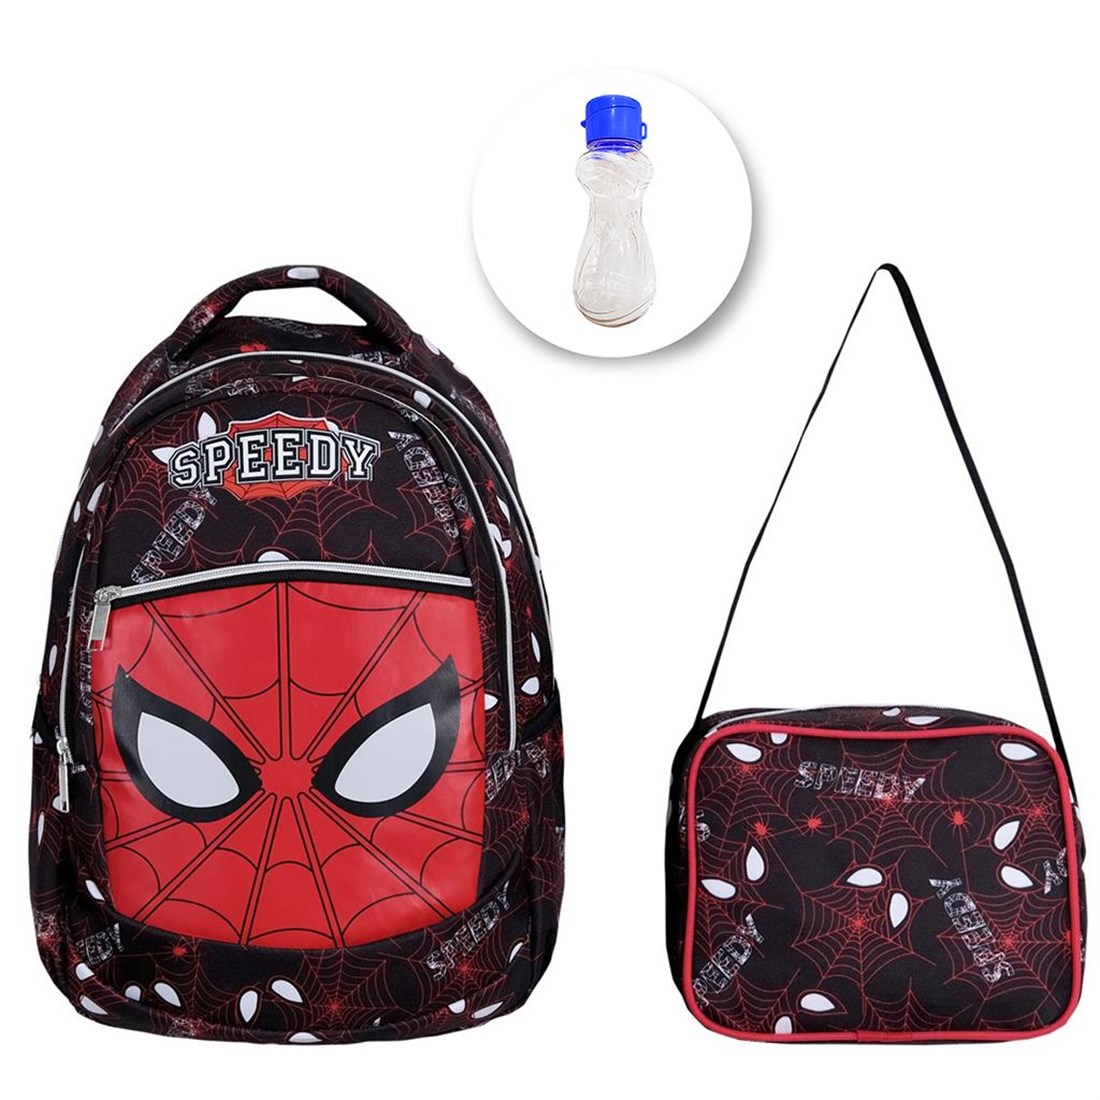 İlkokul Speedy Spiderman Çanta + Beslenme + Suluk - Erkek Çocuk İlkokul  Çantası - Örümcek Adam Çanta